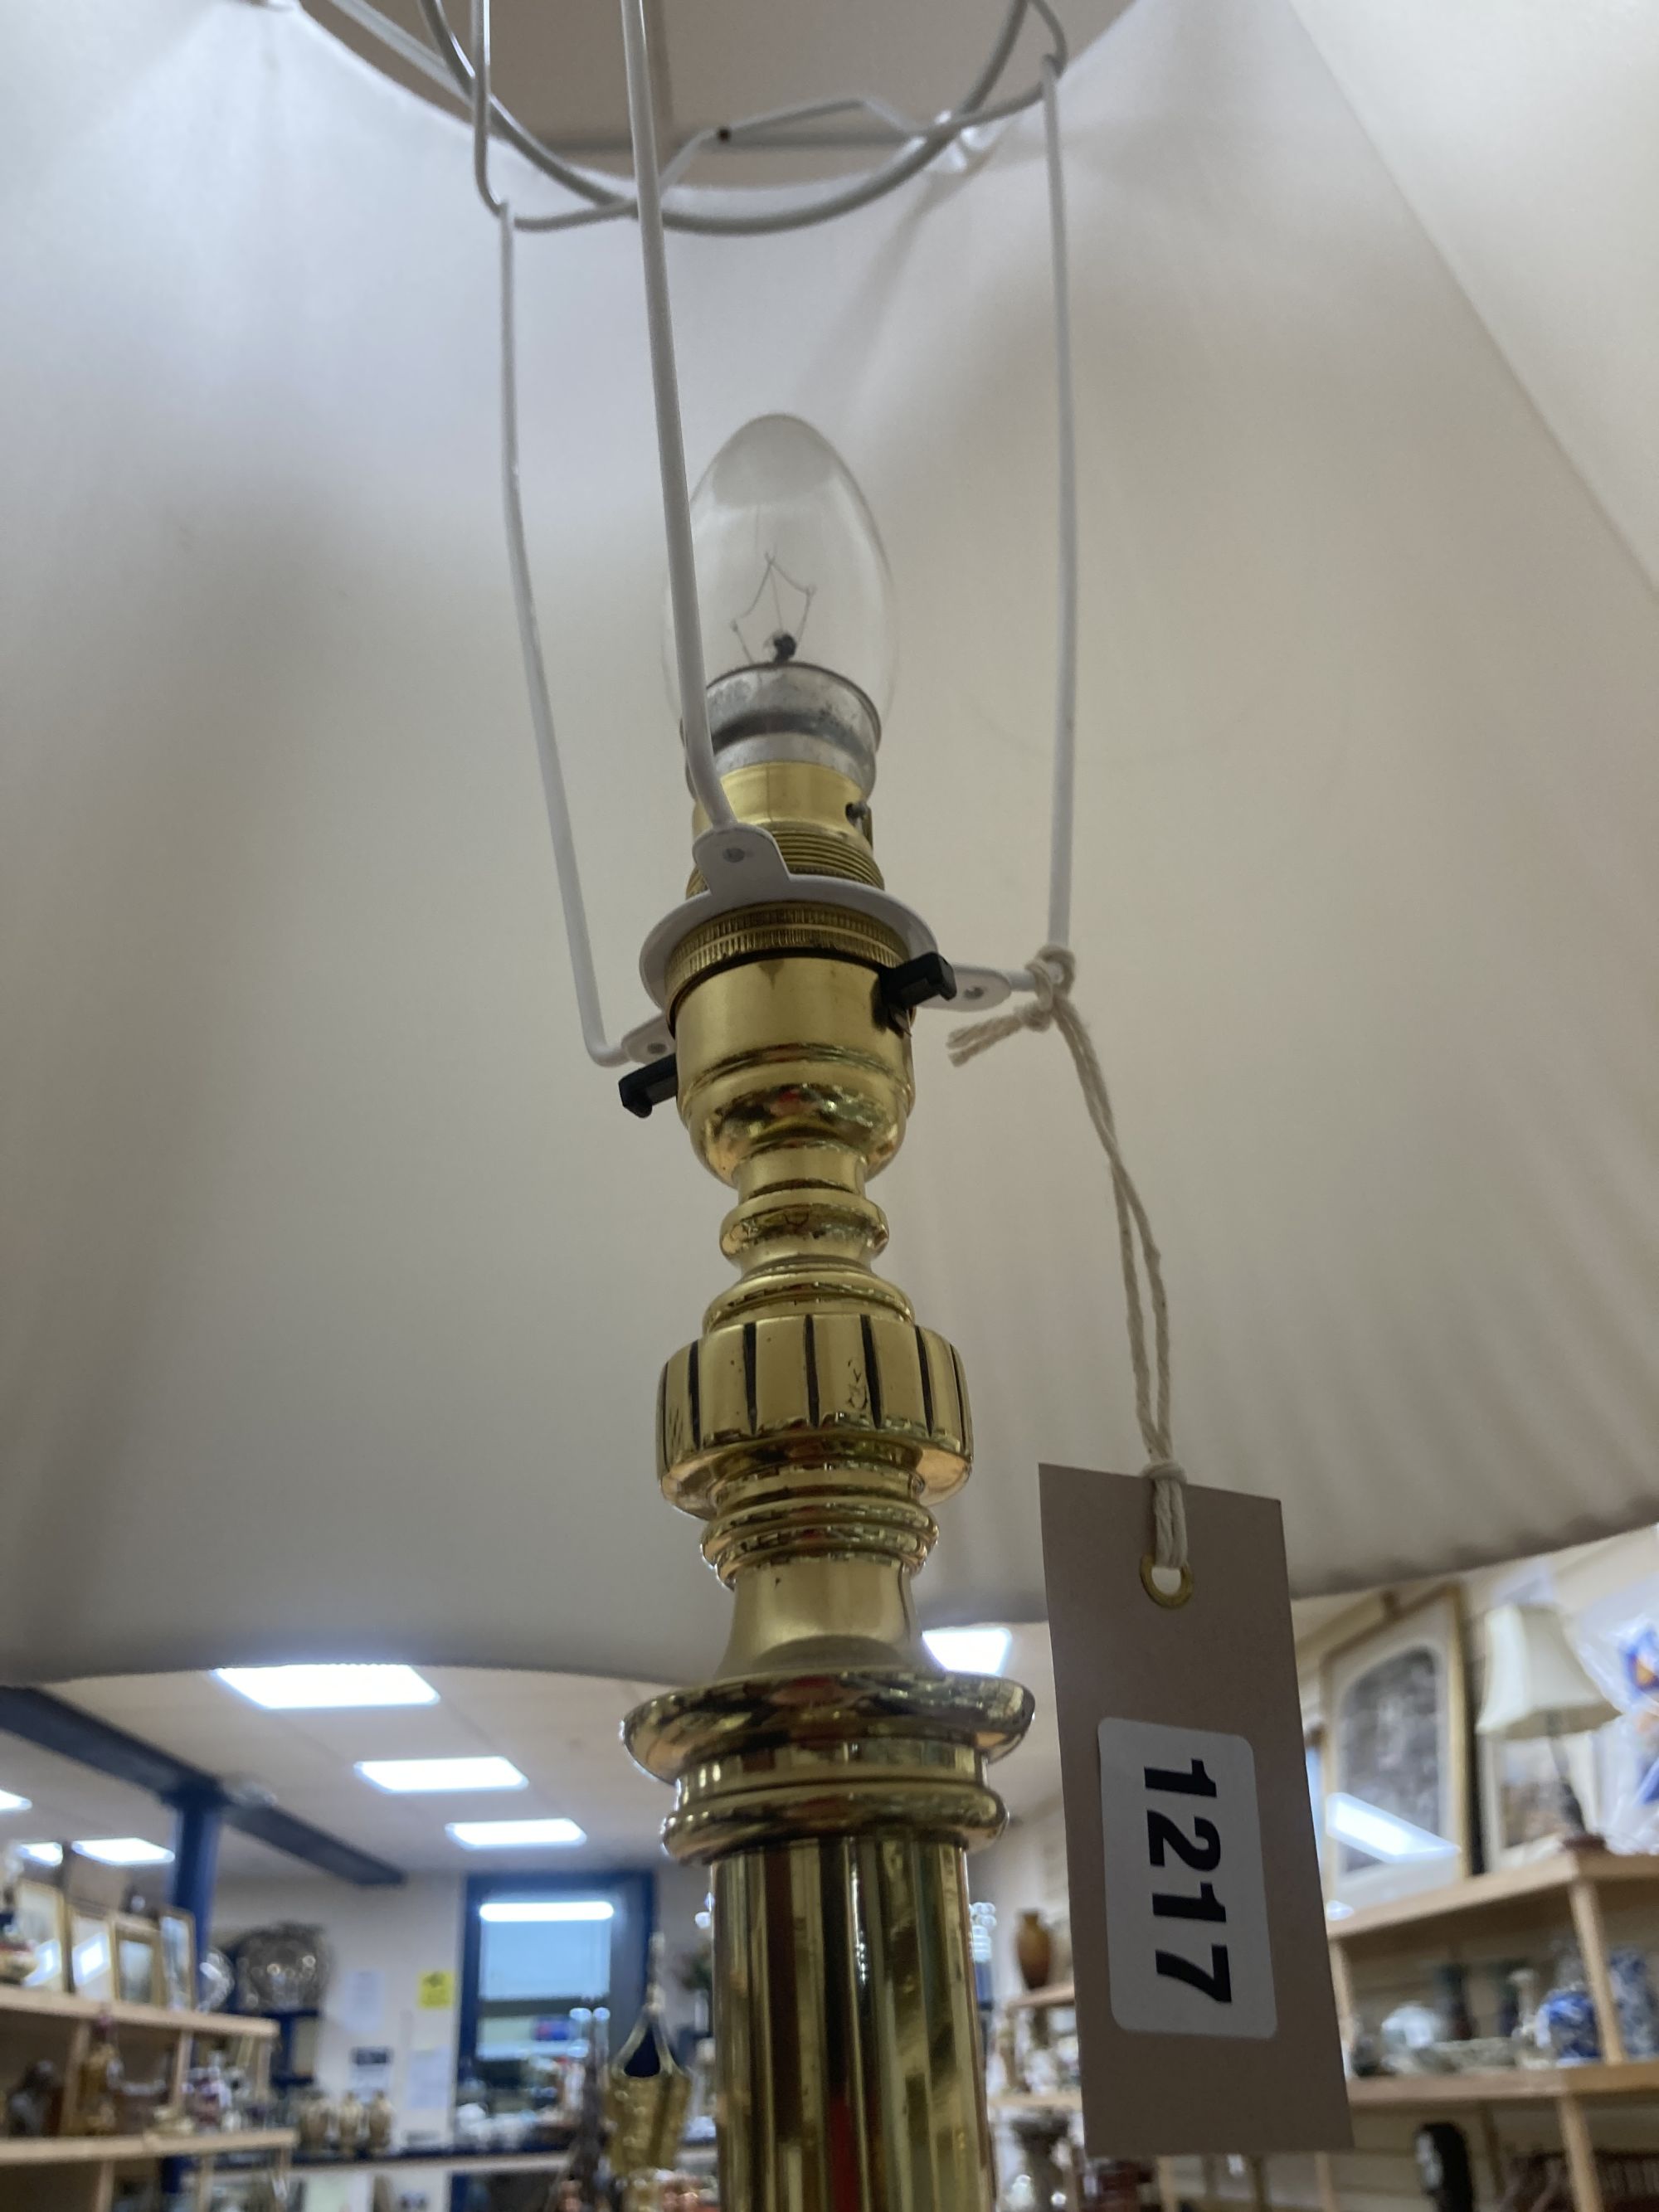 A Corinthian column brass telescopic standard lamp